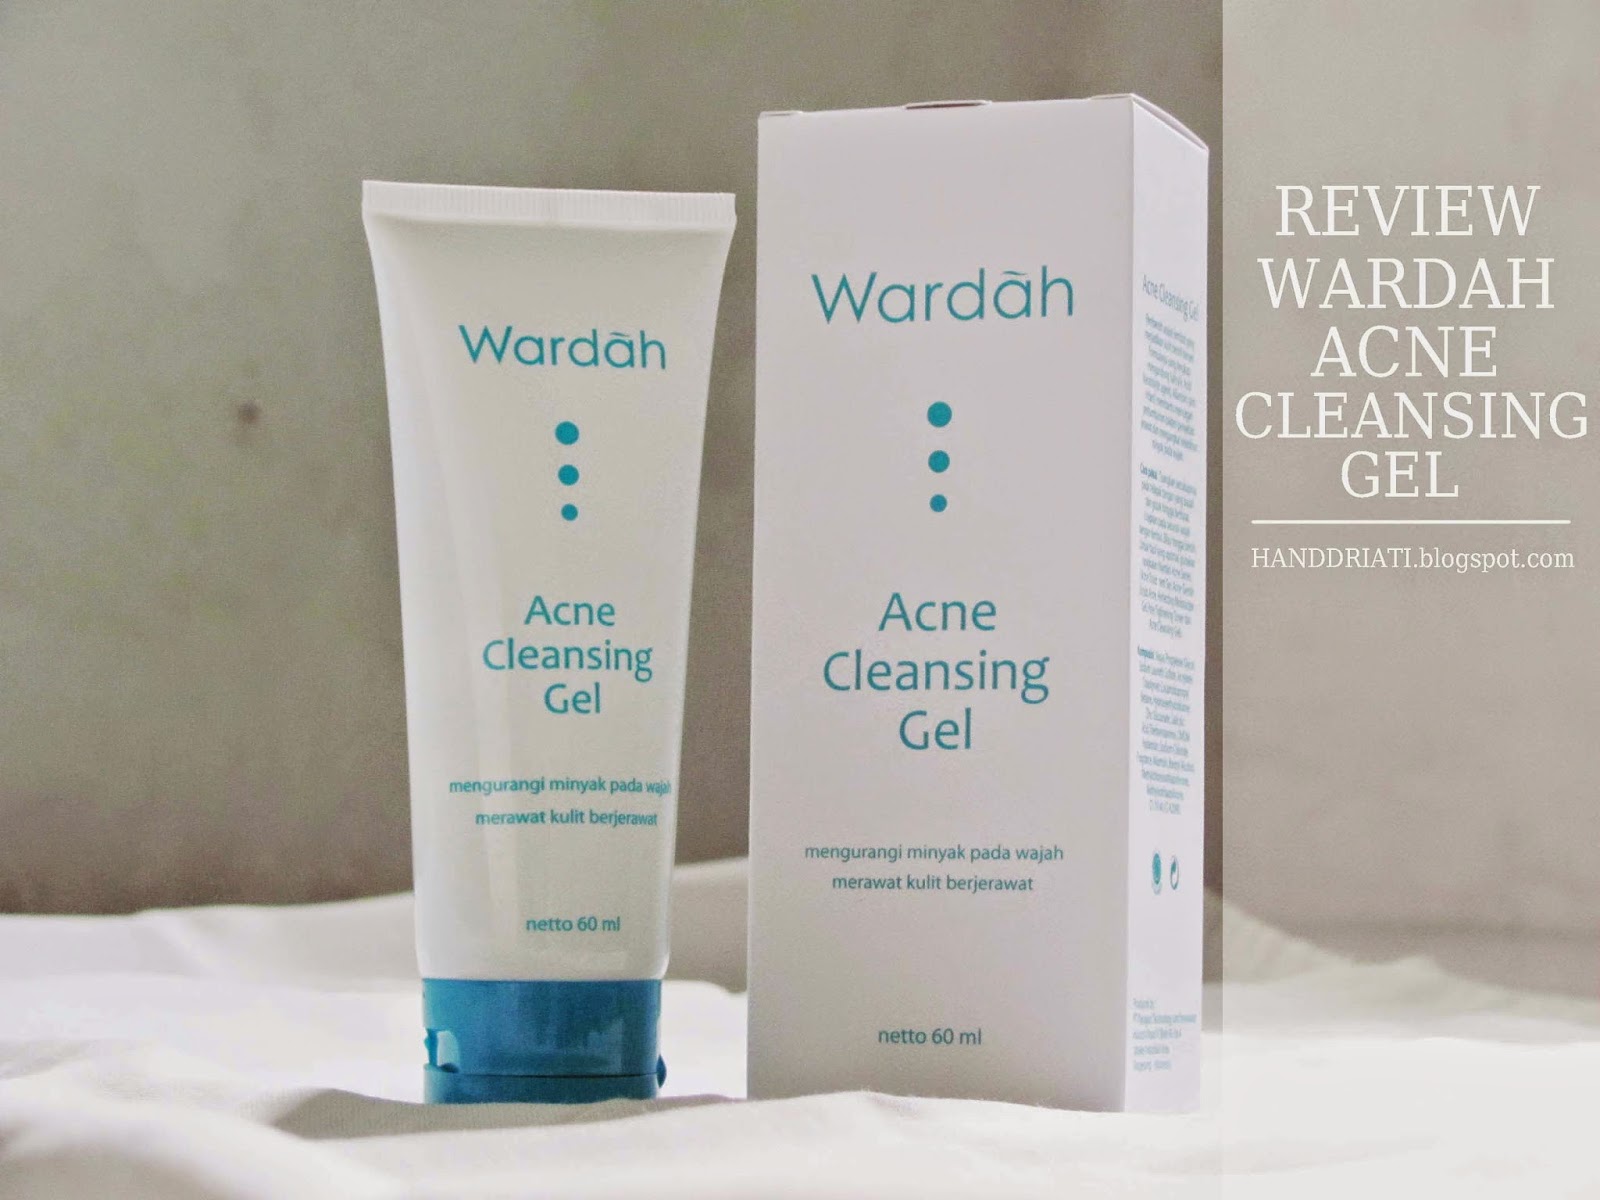 Review Wardah Acne Cleansing Gel